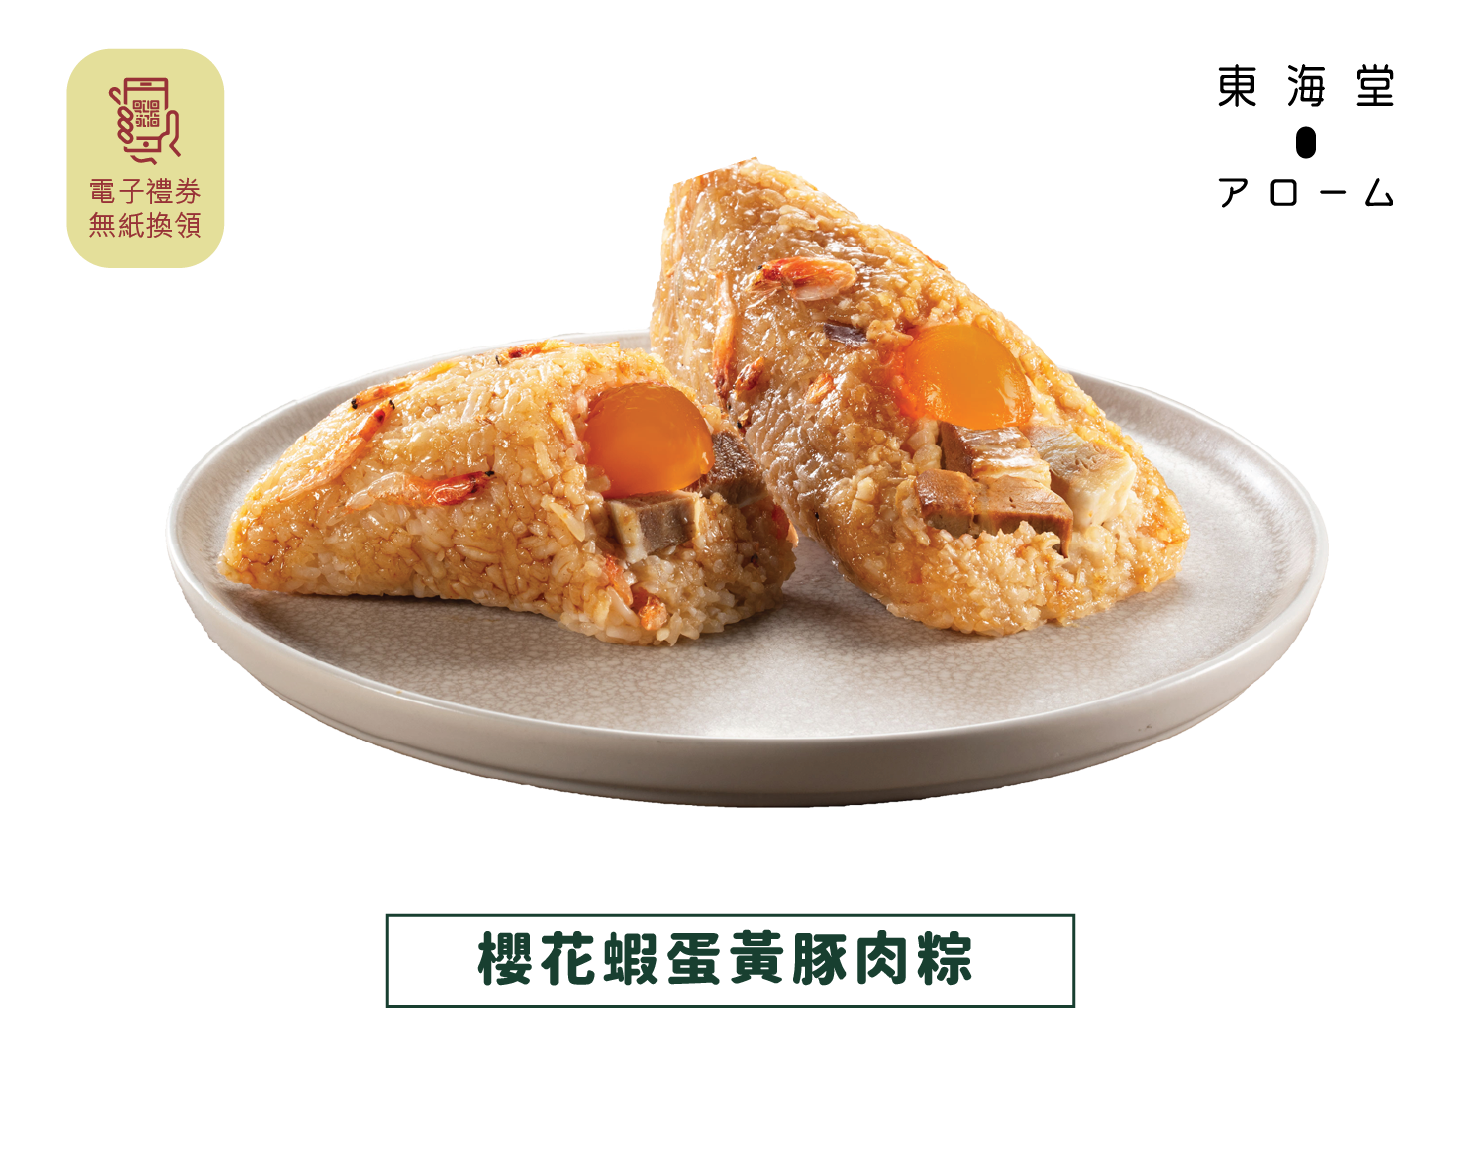 [JLL Offer] Arome | Sakura Shrimp Egg Yolk Pork Rice Dumpling e-Voucher